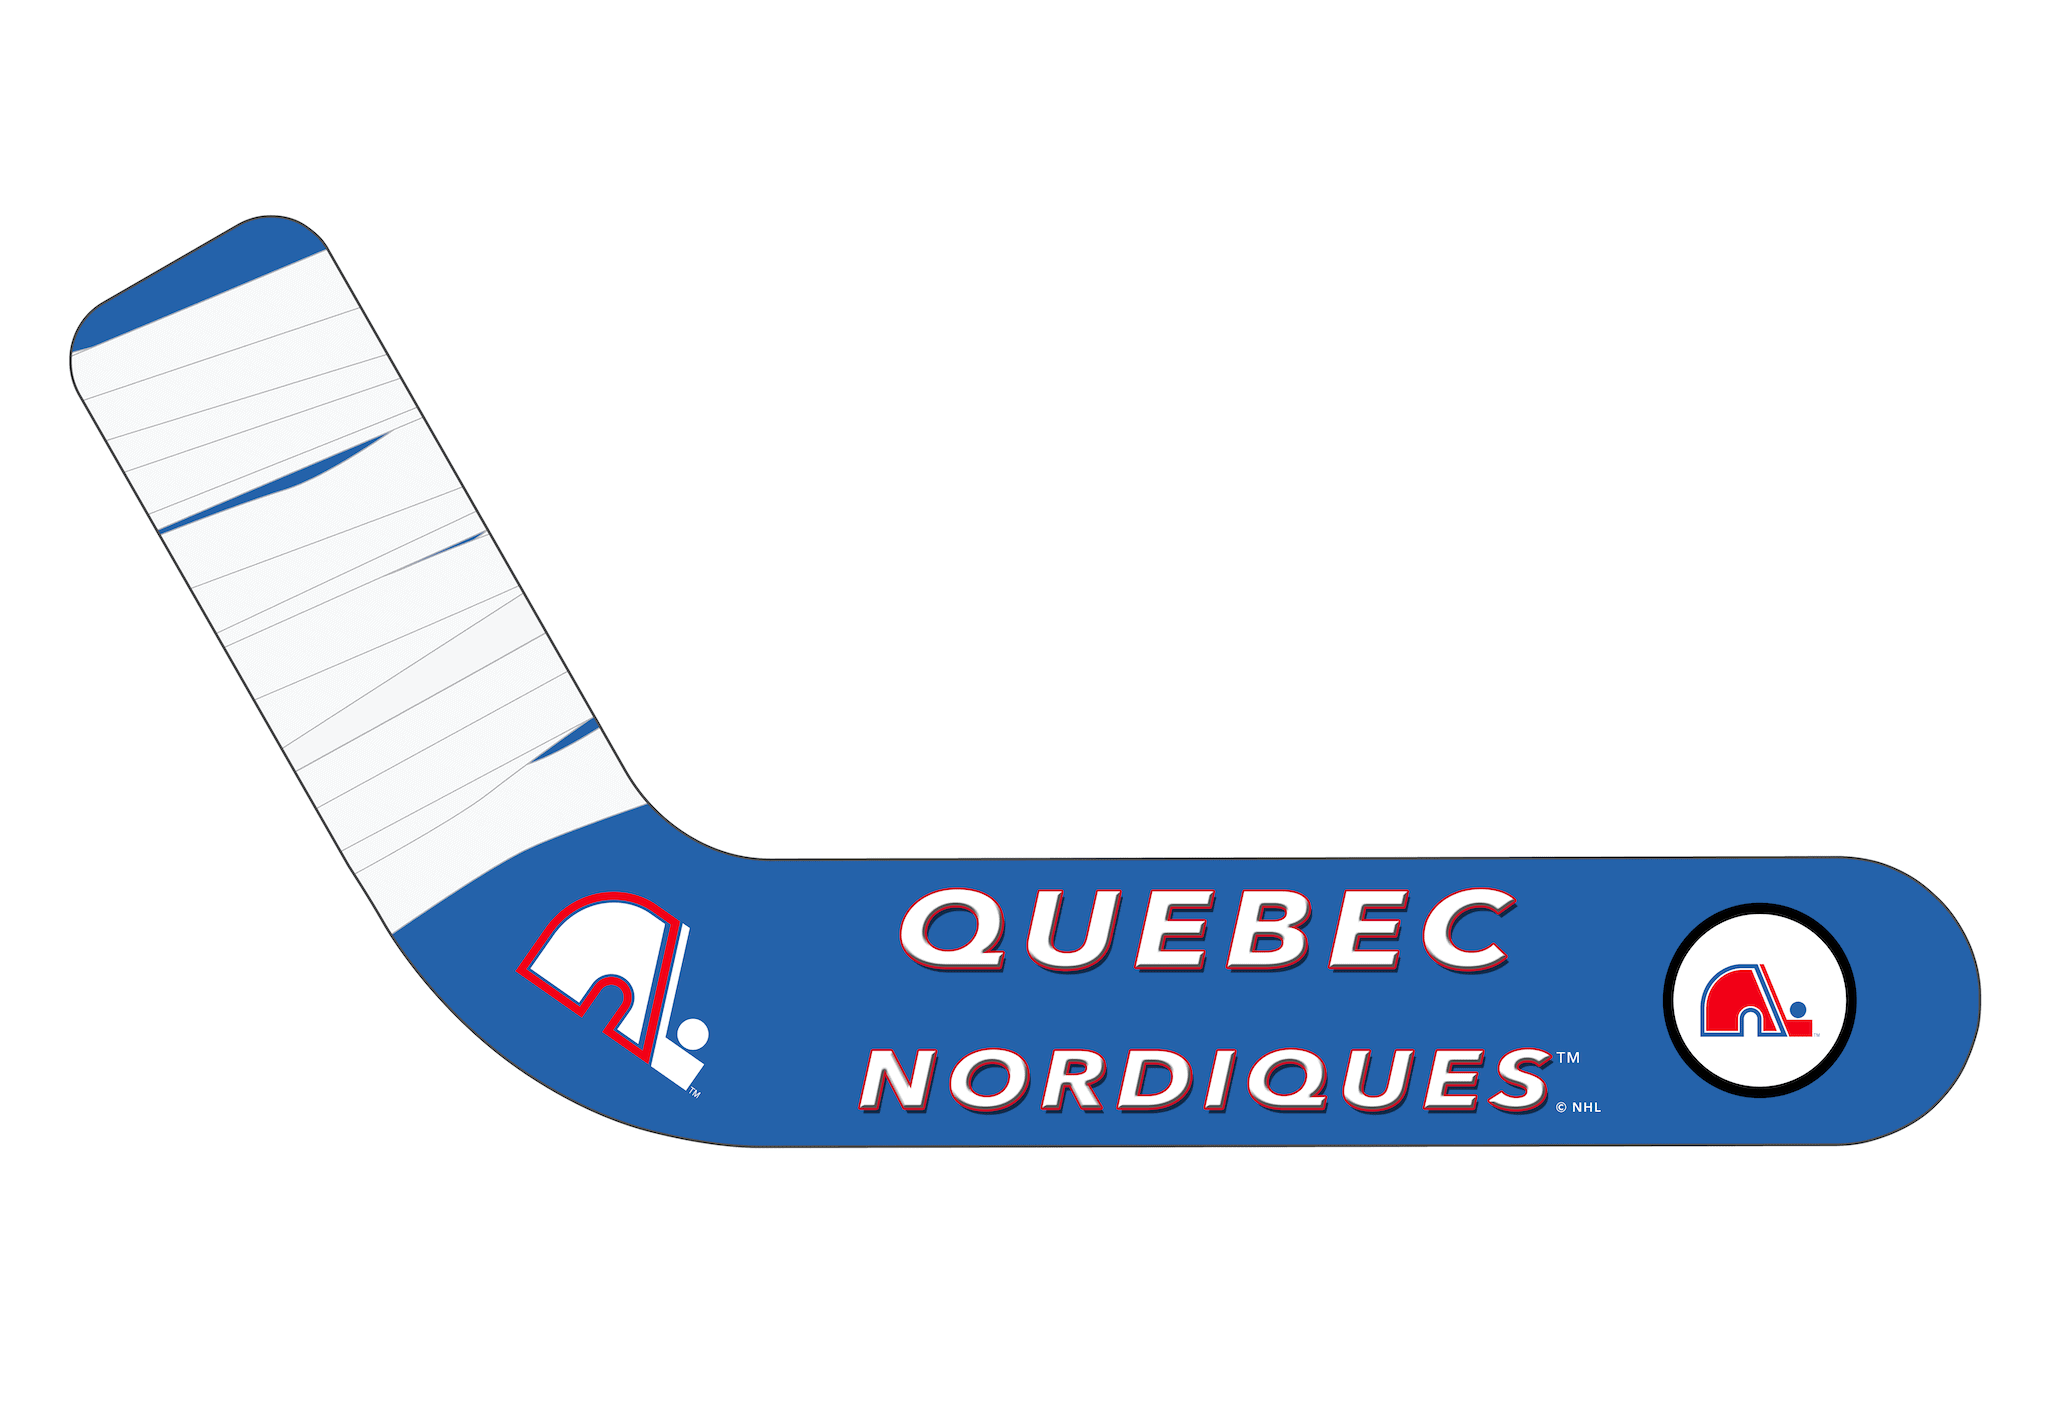 Quebec Nordiques png images